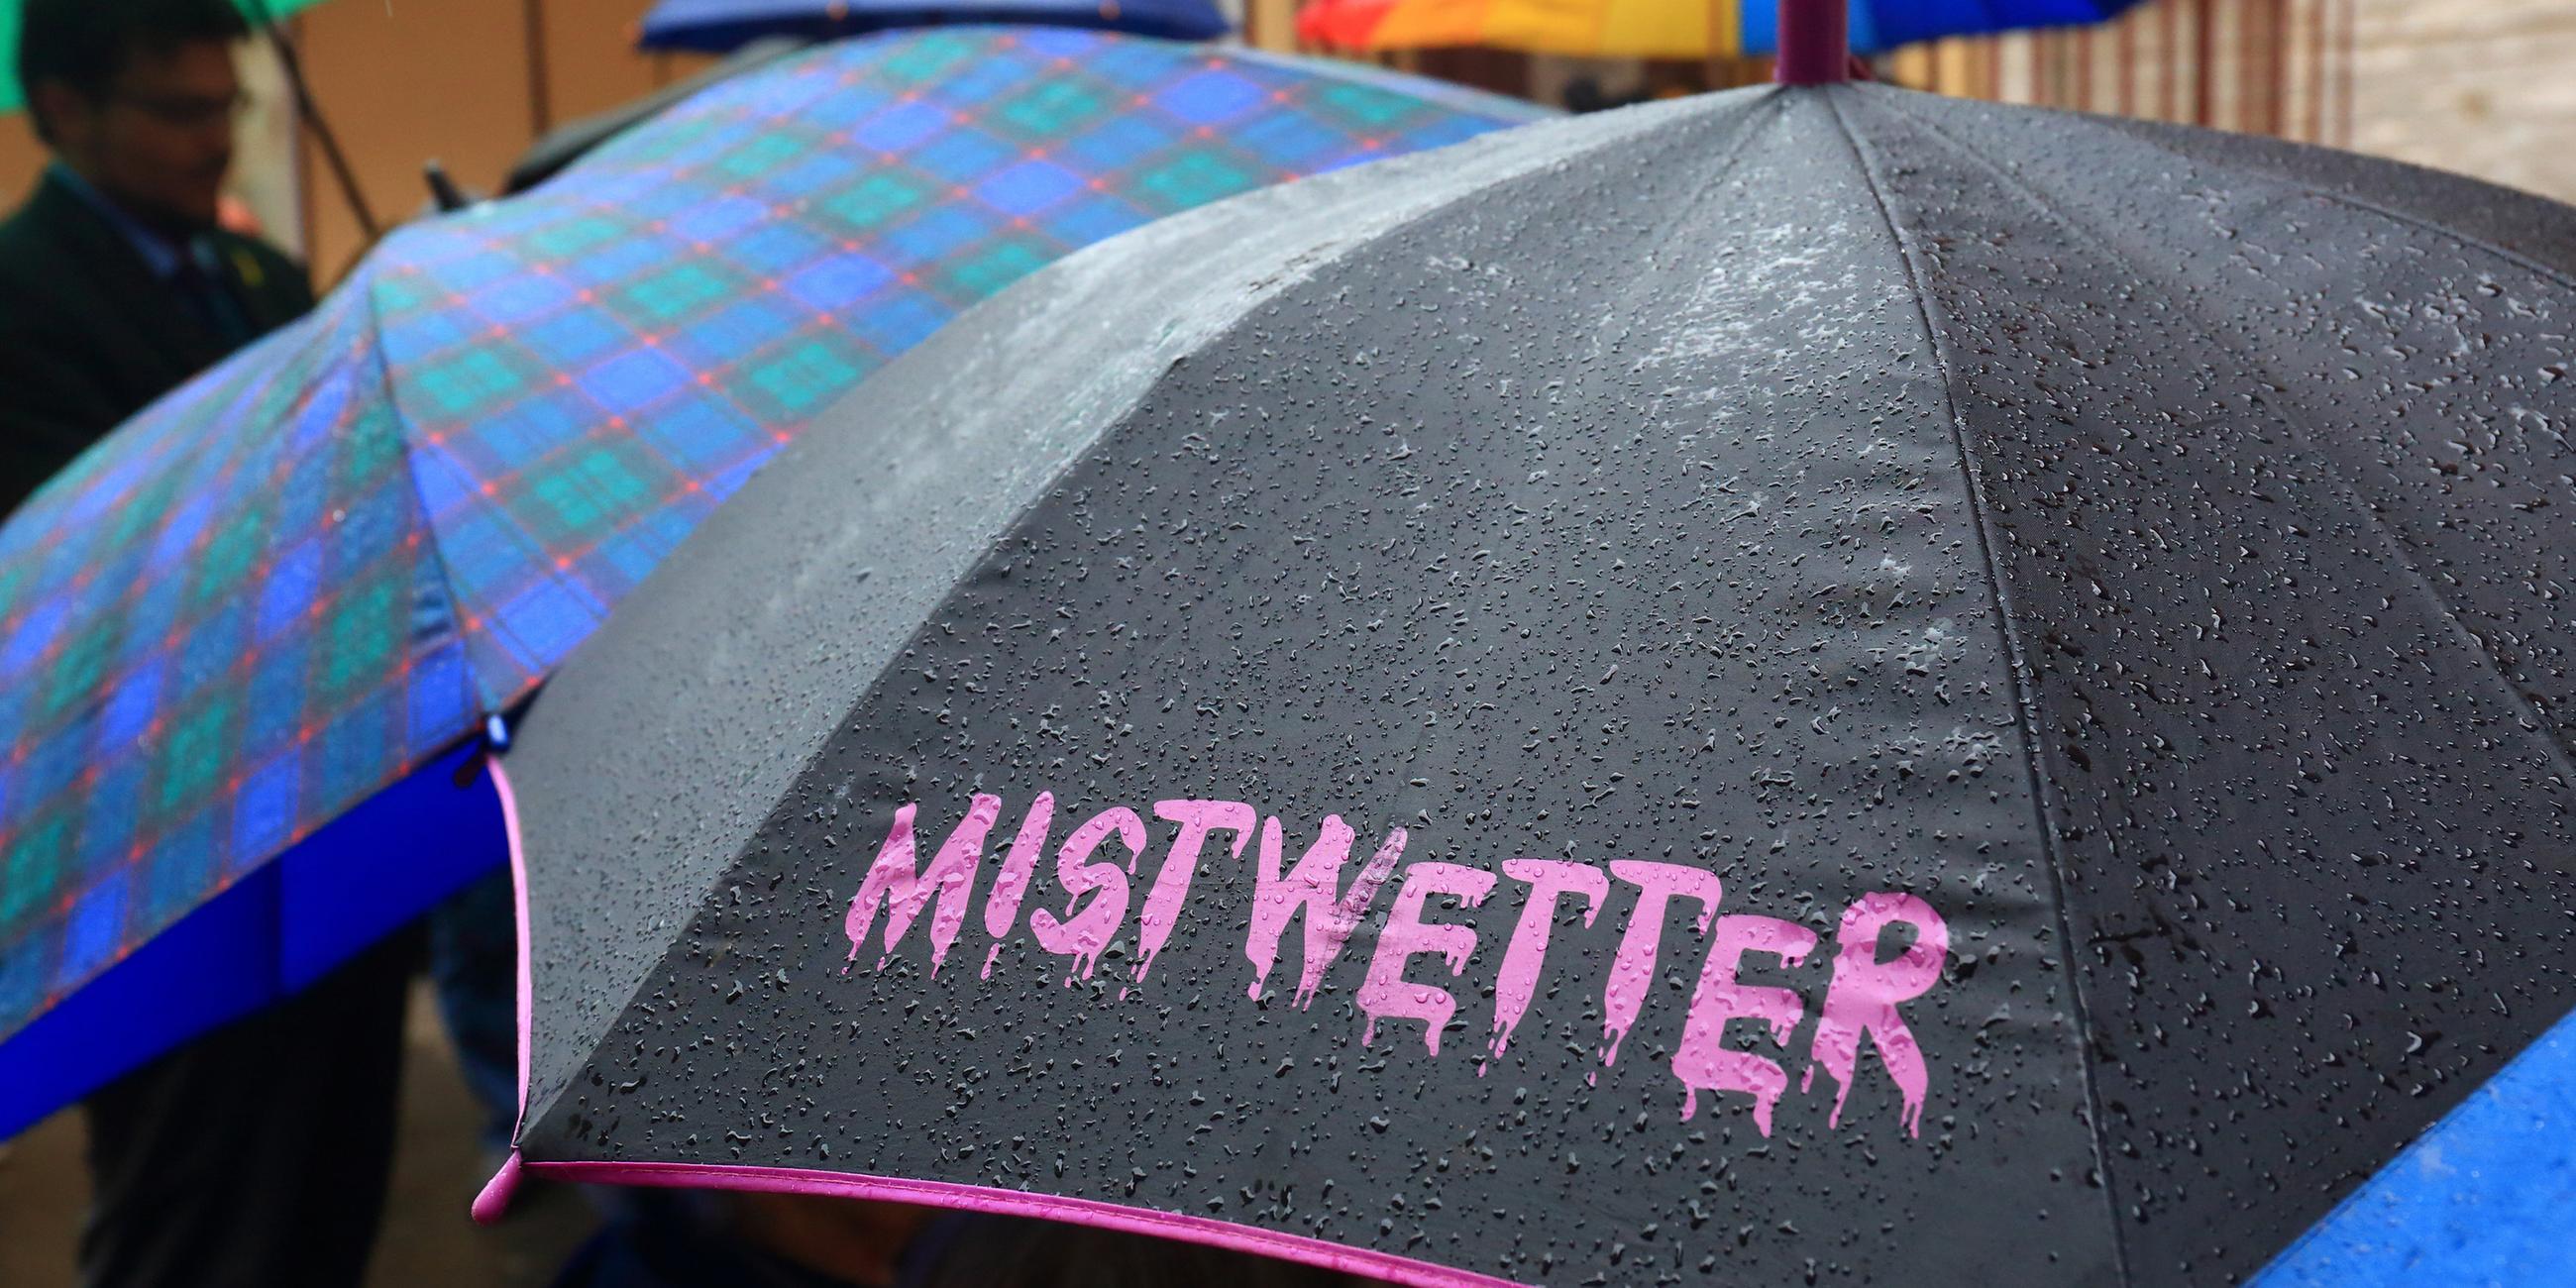 Zu sehen sind mehrere Regenschirme. Im Vordergrund ist ein schwarzer Regenschirm mit einer rosa Beschriftung: "Mistwetter".